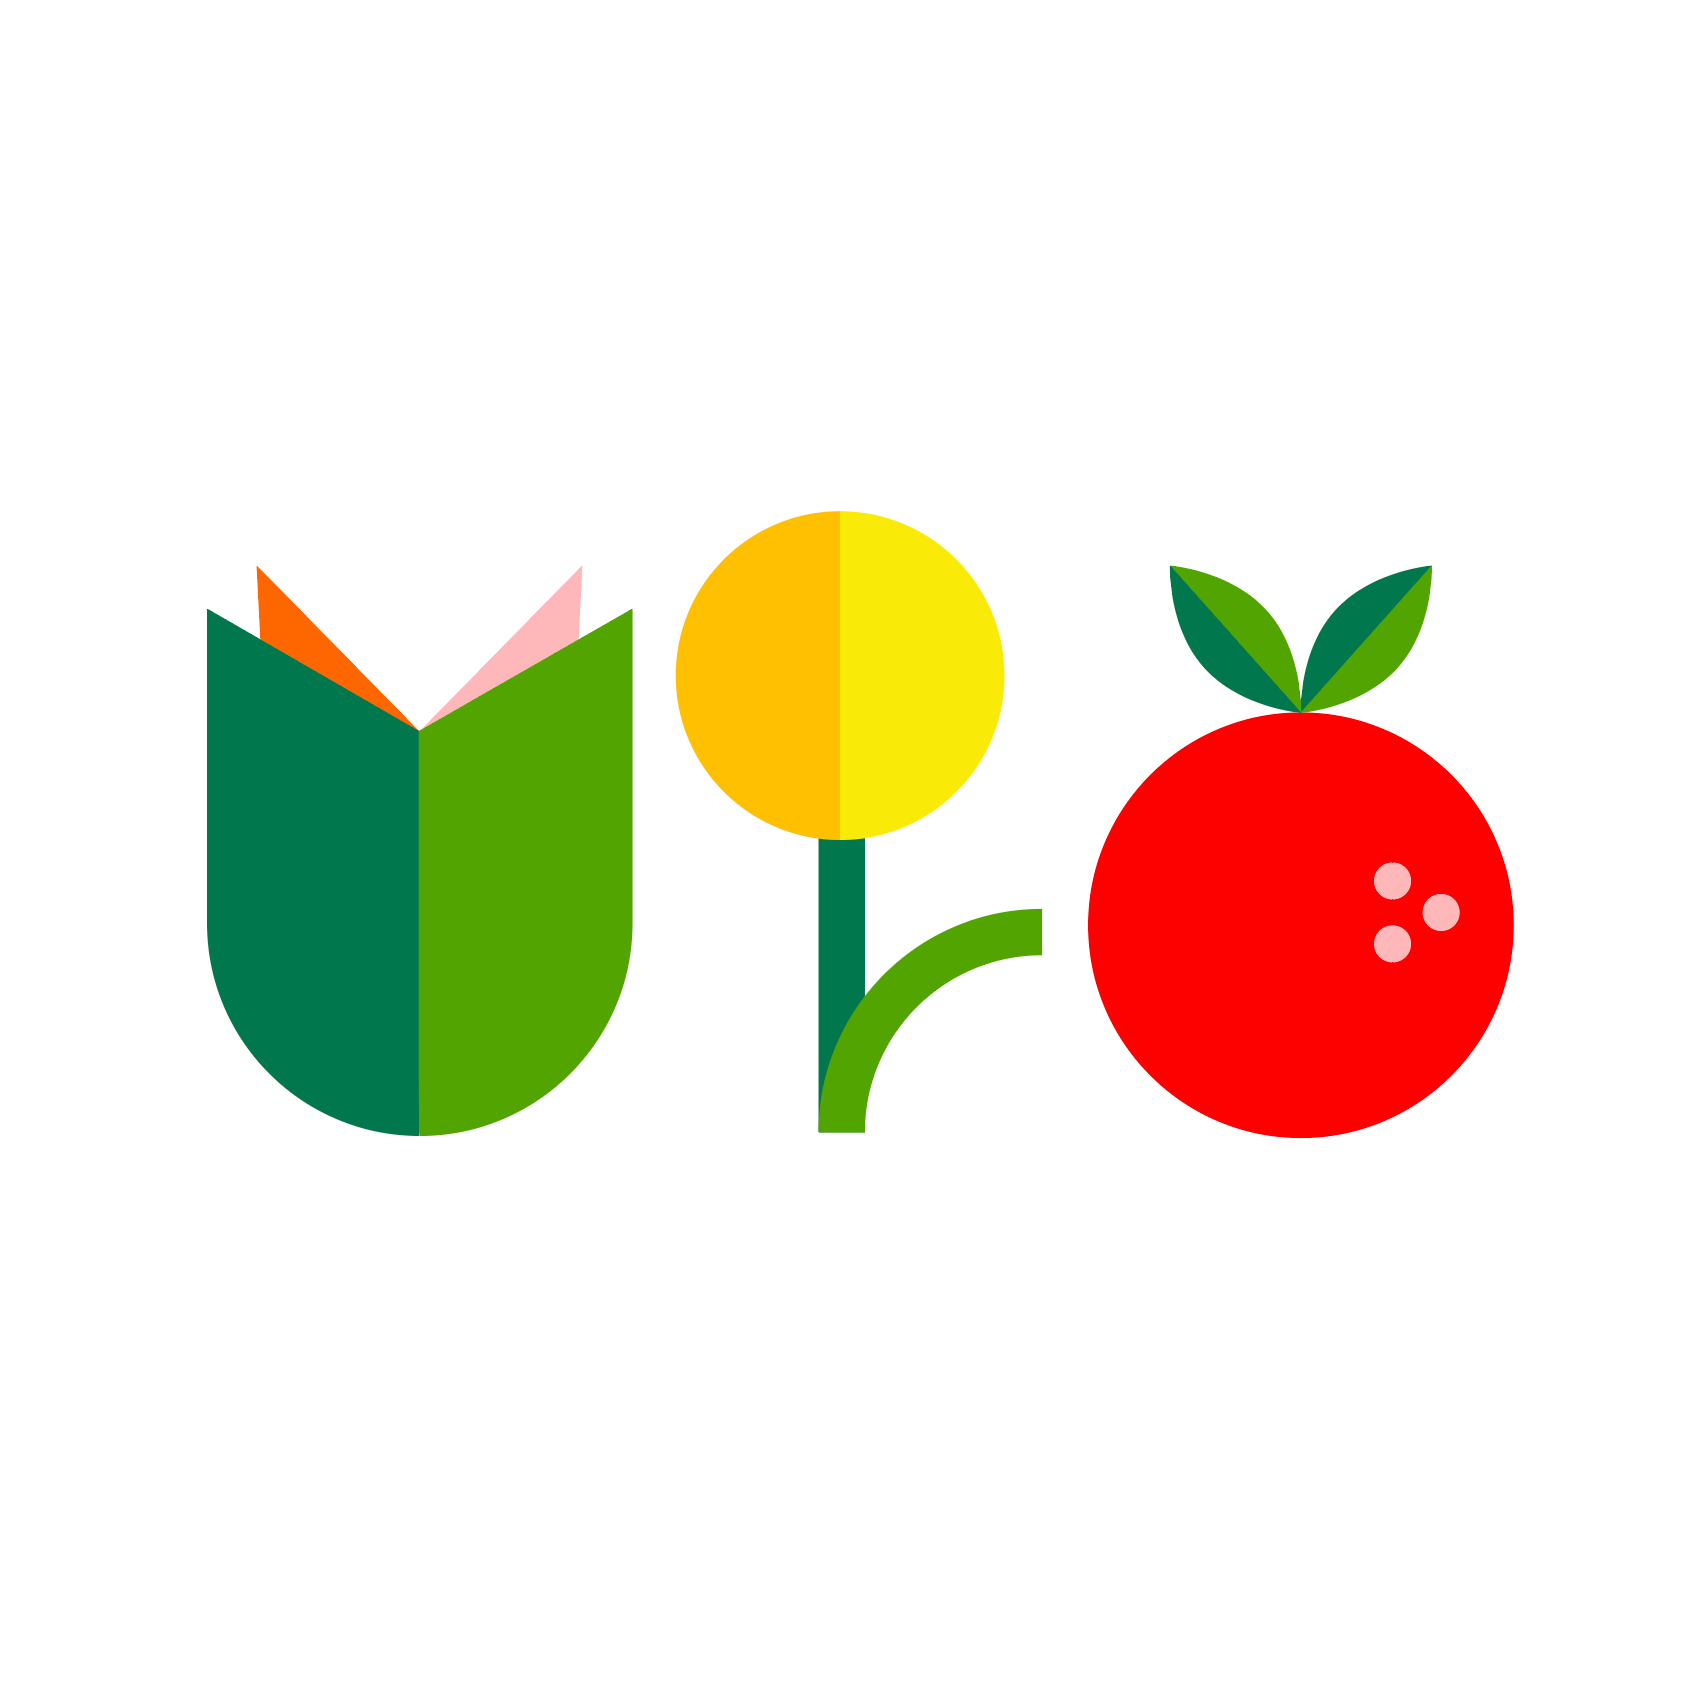 Image may contain: Font, Fruit, Natural foods, Logo, Circle.